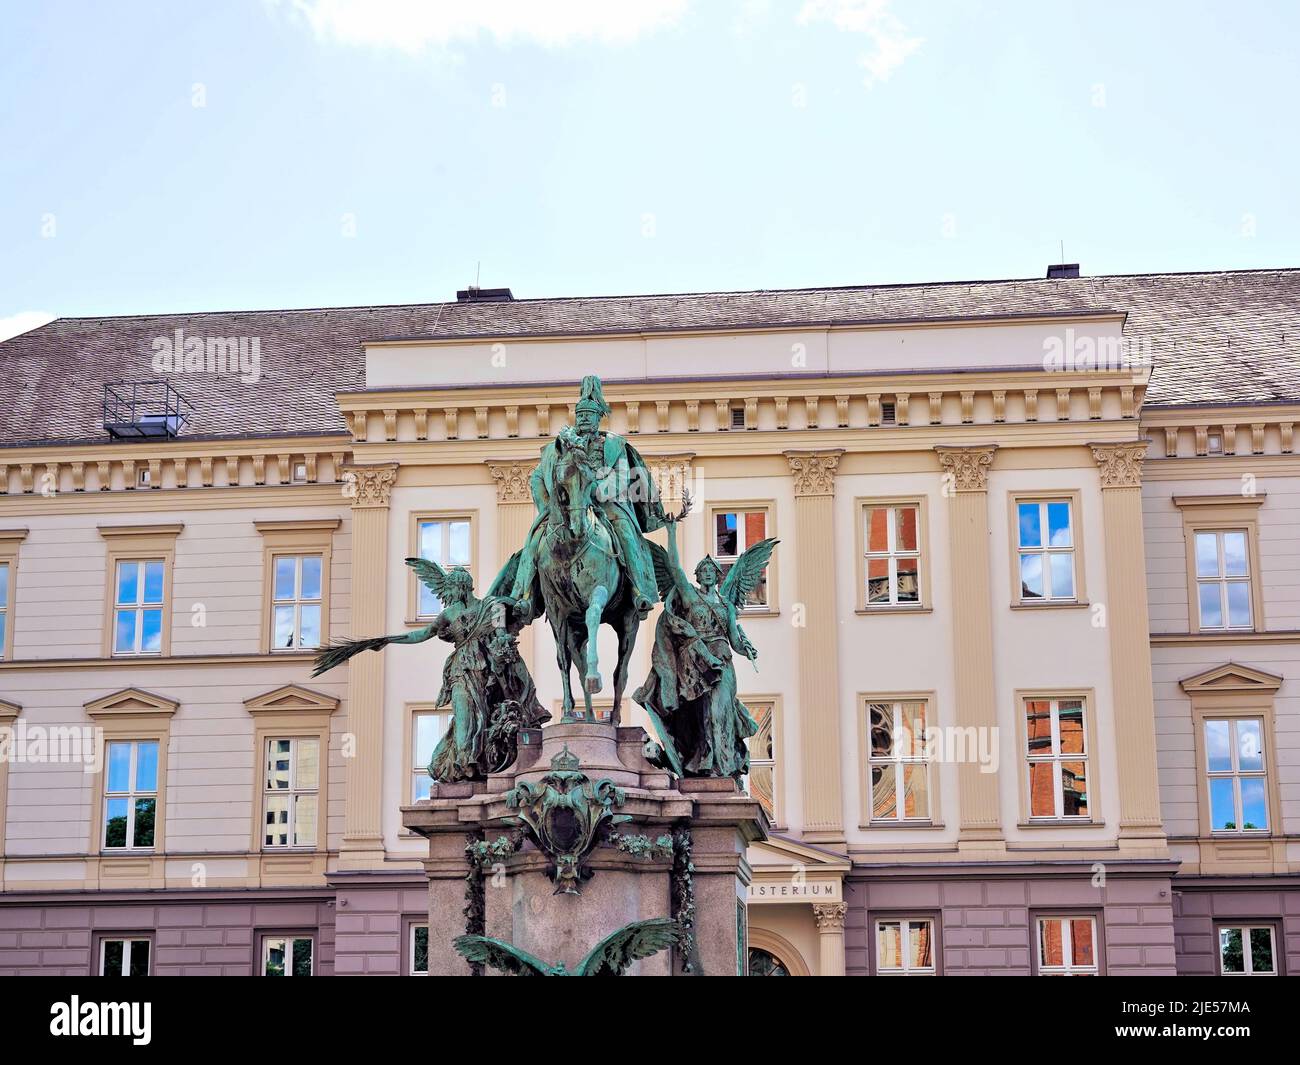 La statue équestre néo-baroque du Kaiser Wilhelm I. à Düsseldorf, dévoilée le 18 octobre 1896. Sculpteur: Karl Janssen. Banque D'Images